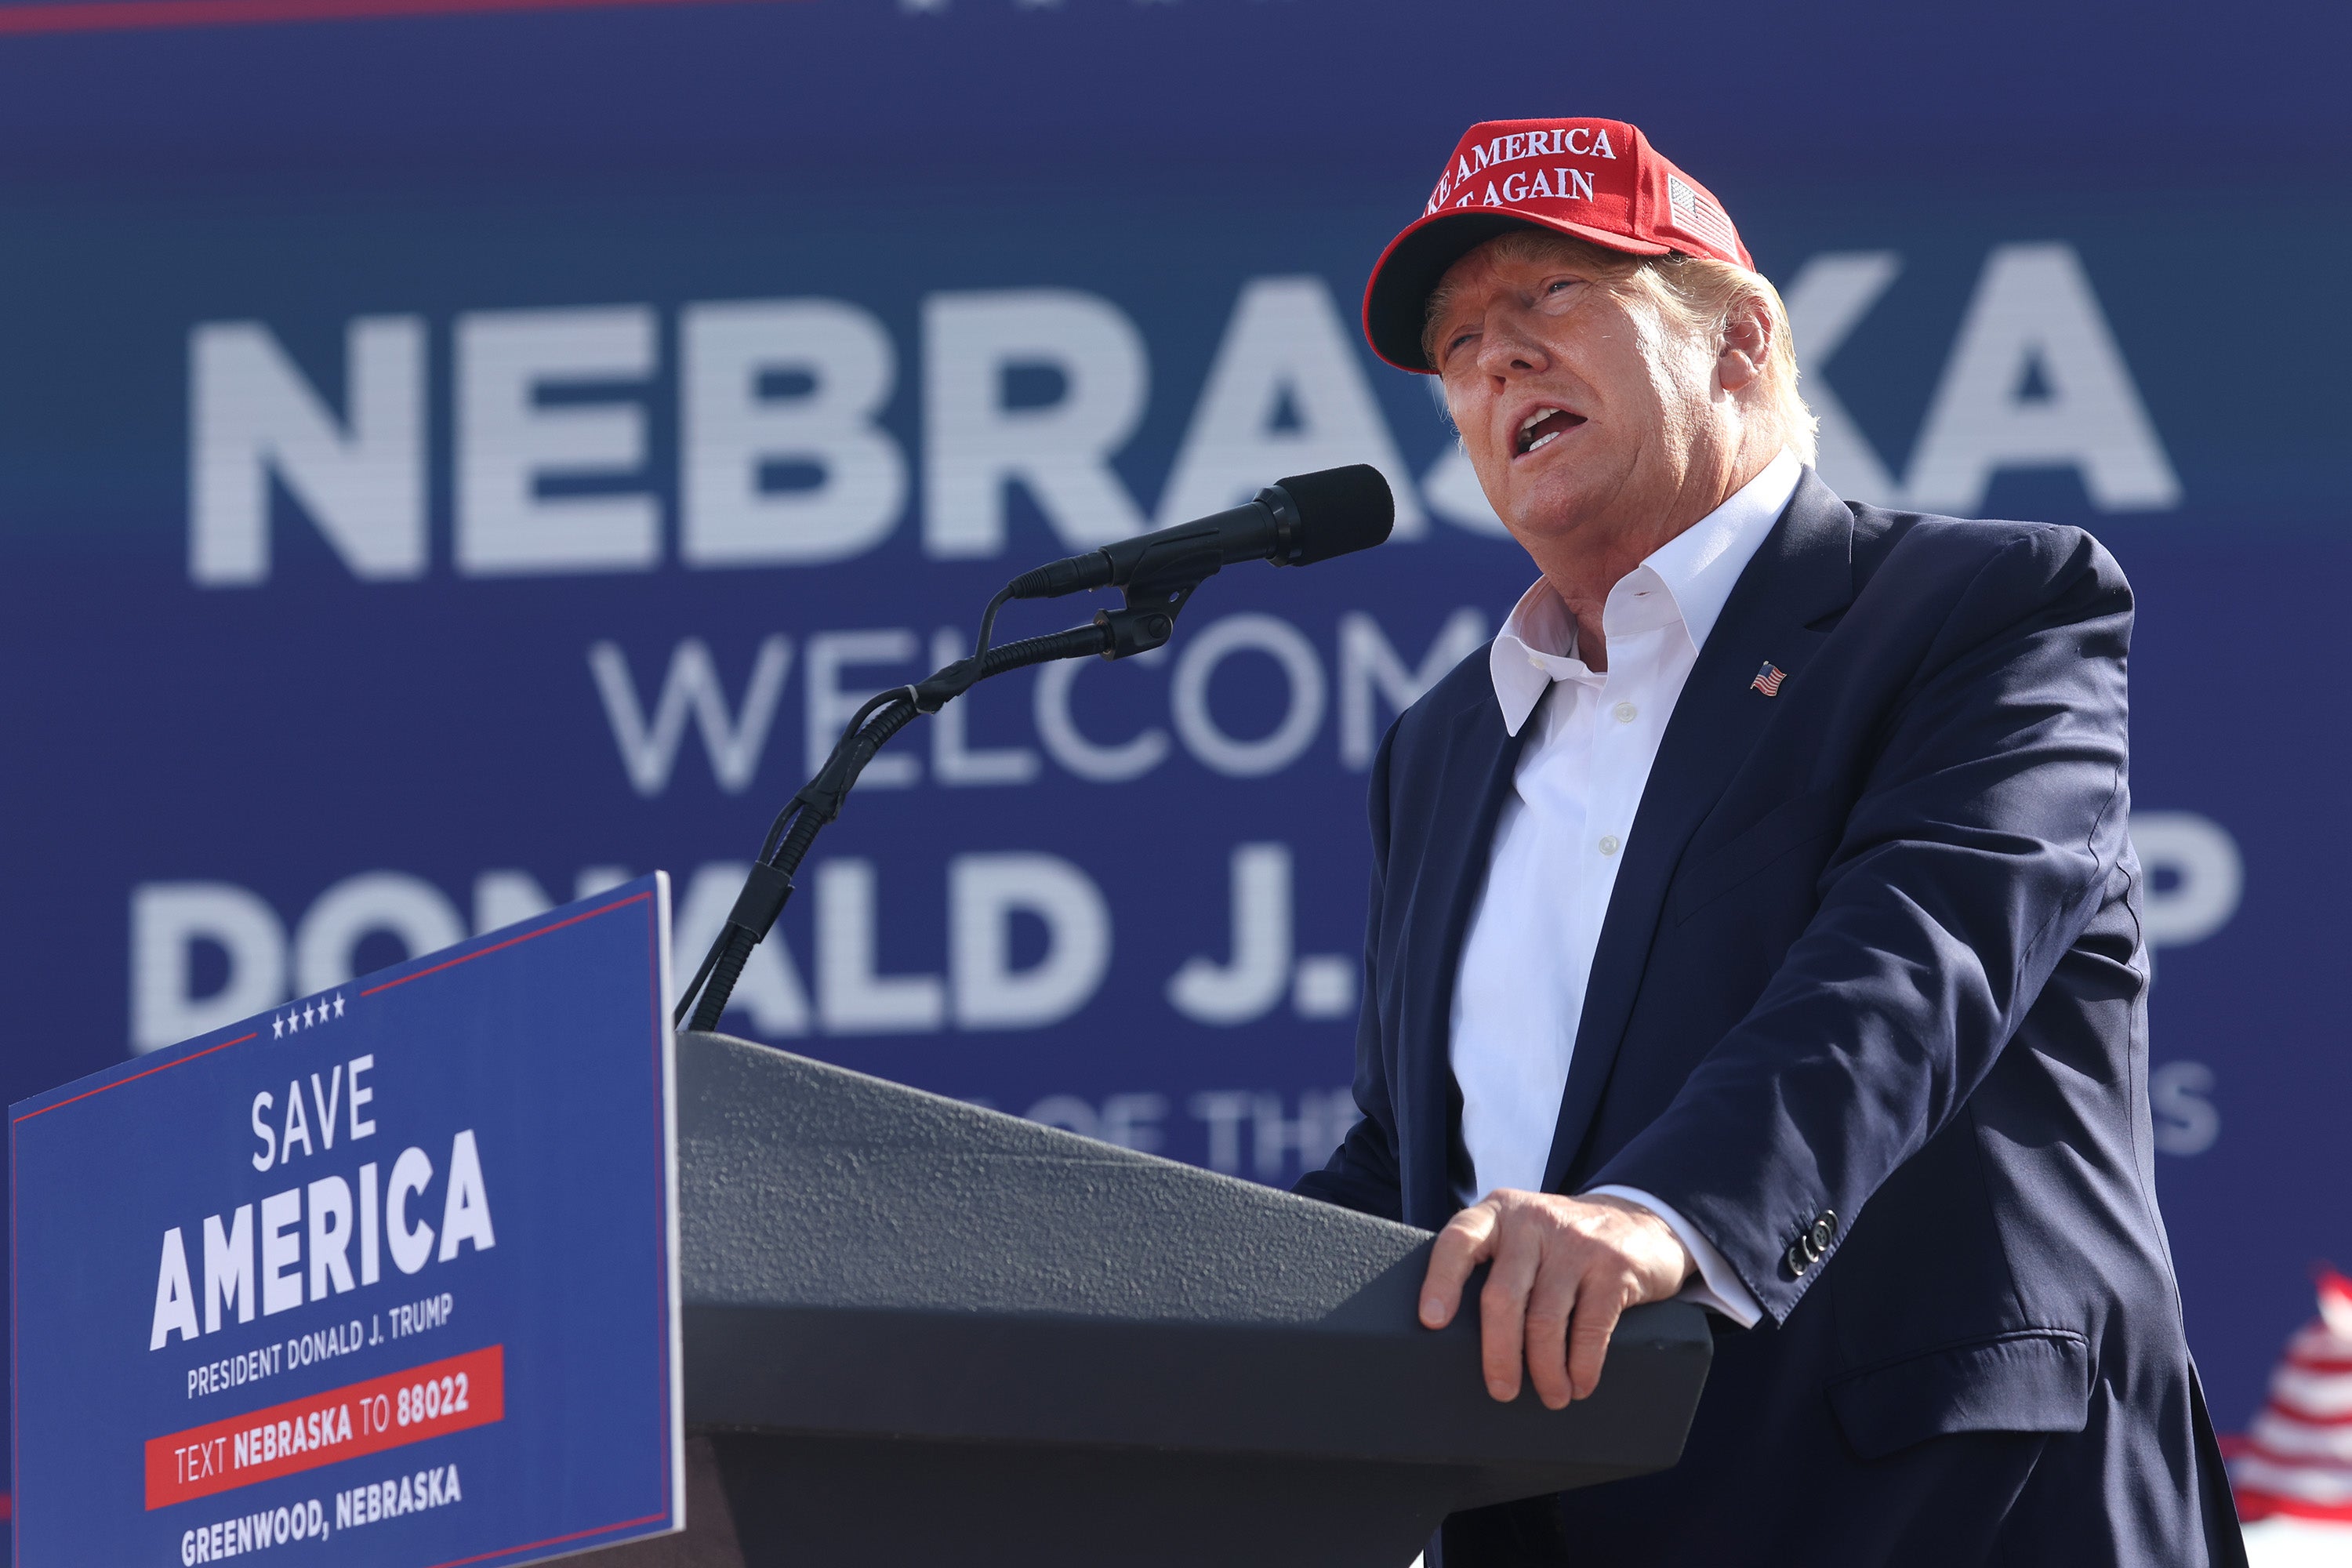 El expresidente Donald Trump se dirige a sus seguidores durante un mitin en el I-80 Speedway el 01 de mayo de 2022 en Greenwood, Nebraska